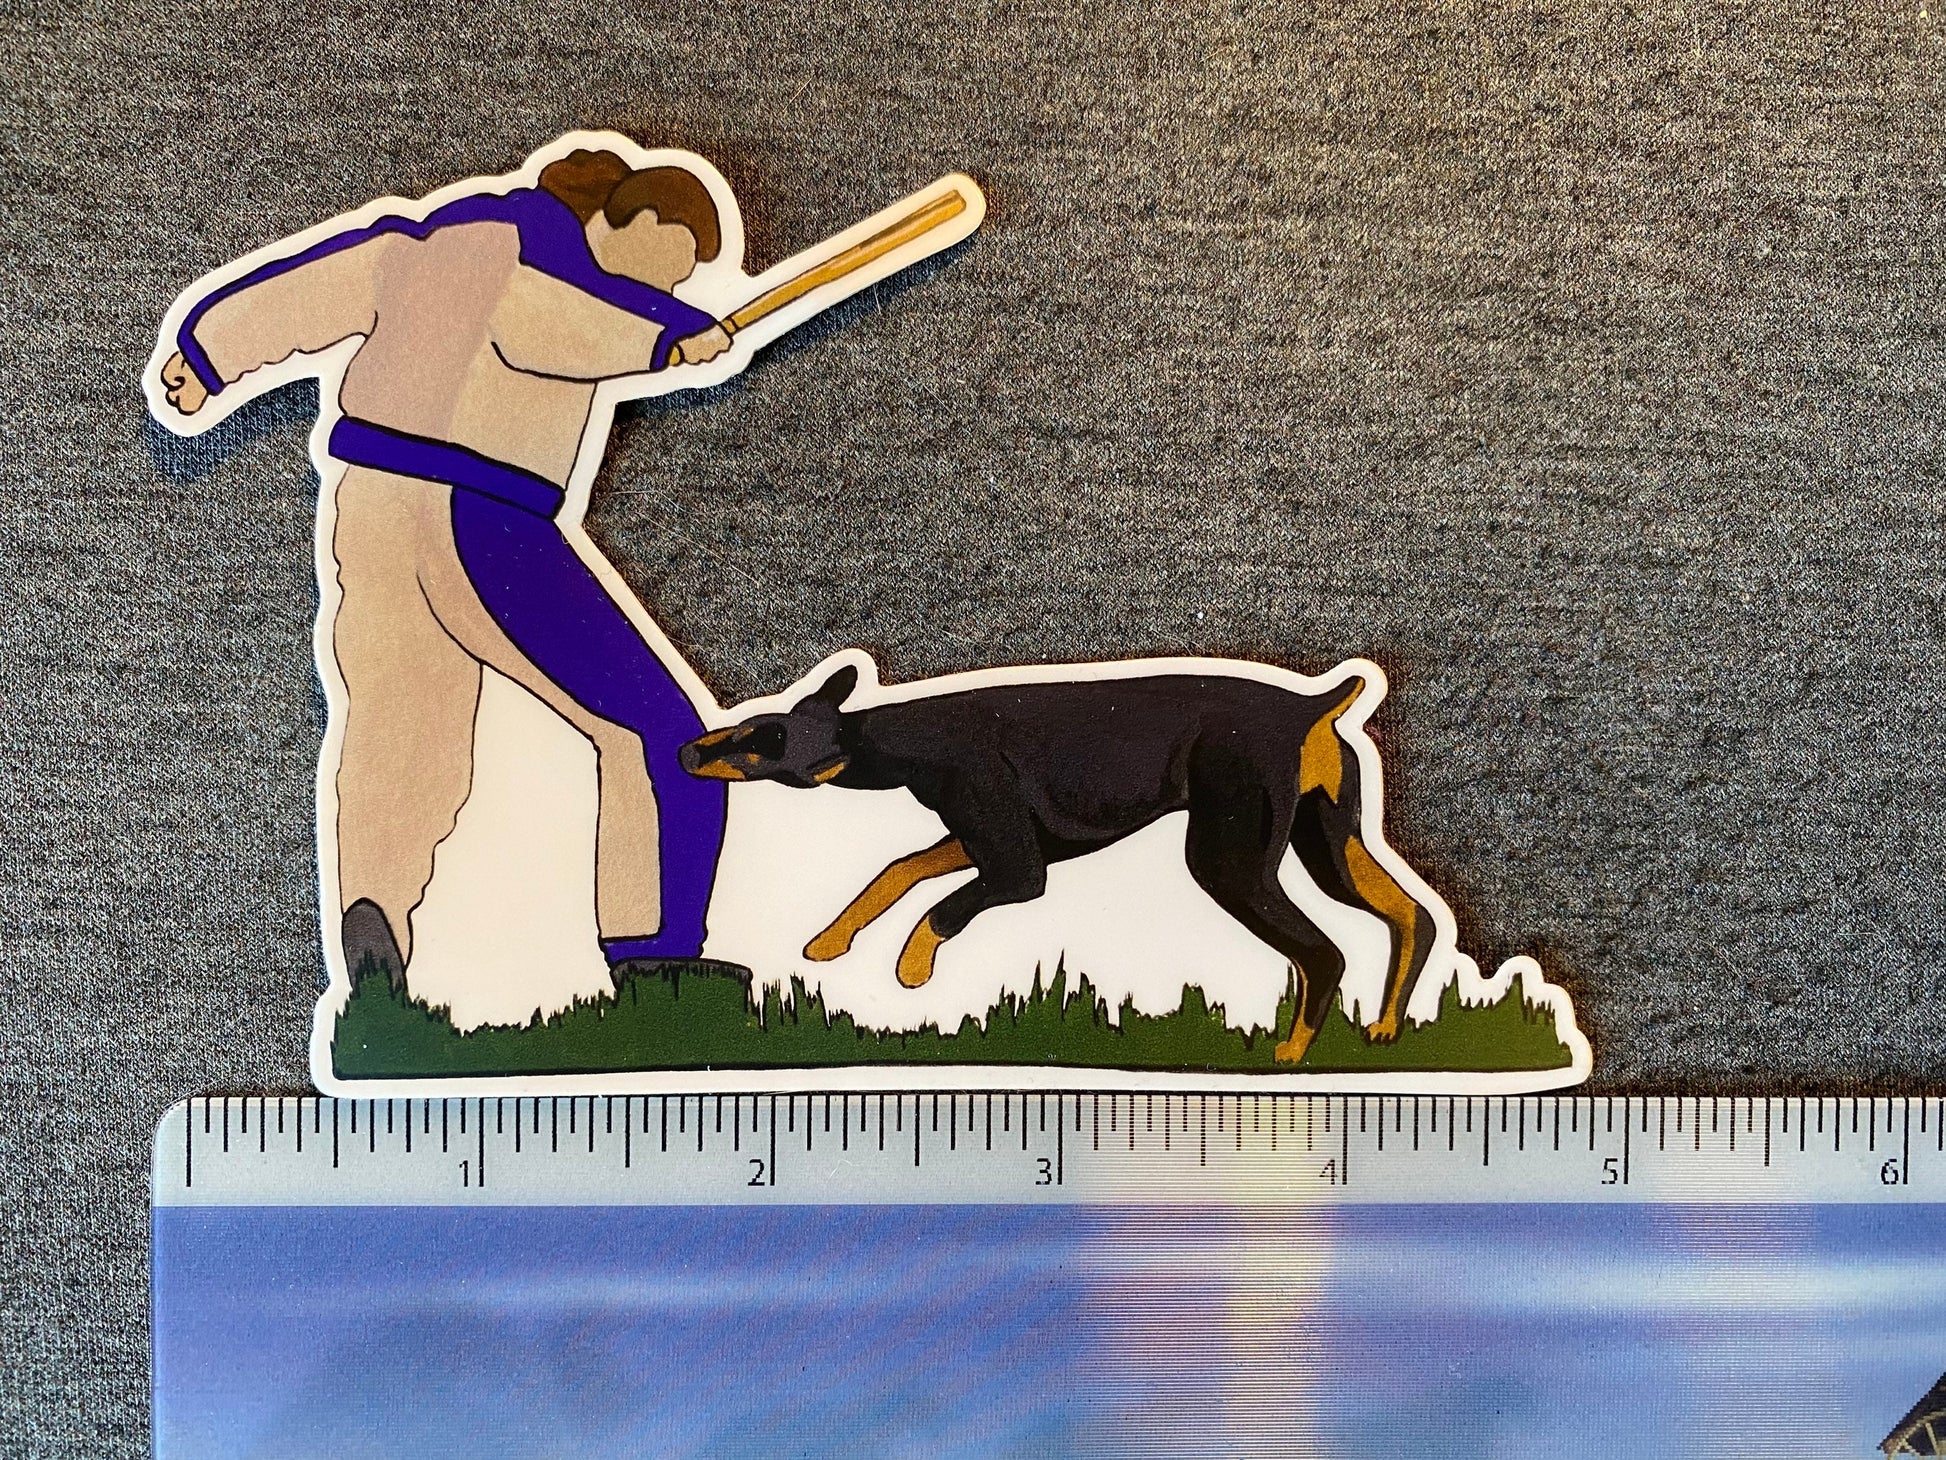 Doberman Dog Bite Sport 5" Die Cut Vinyl Sticker Decal: Durable Matte-Finish Active